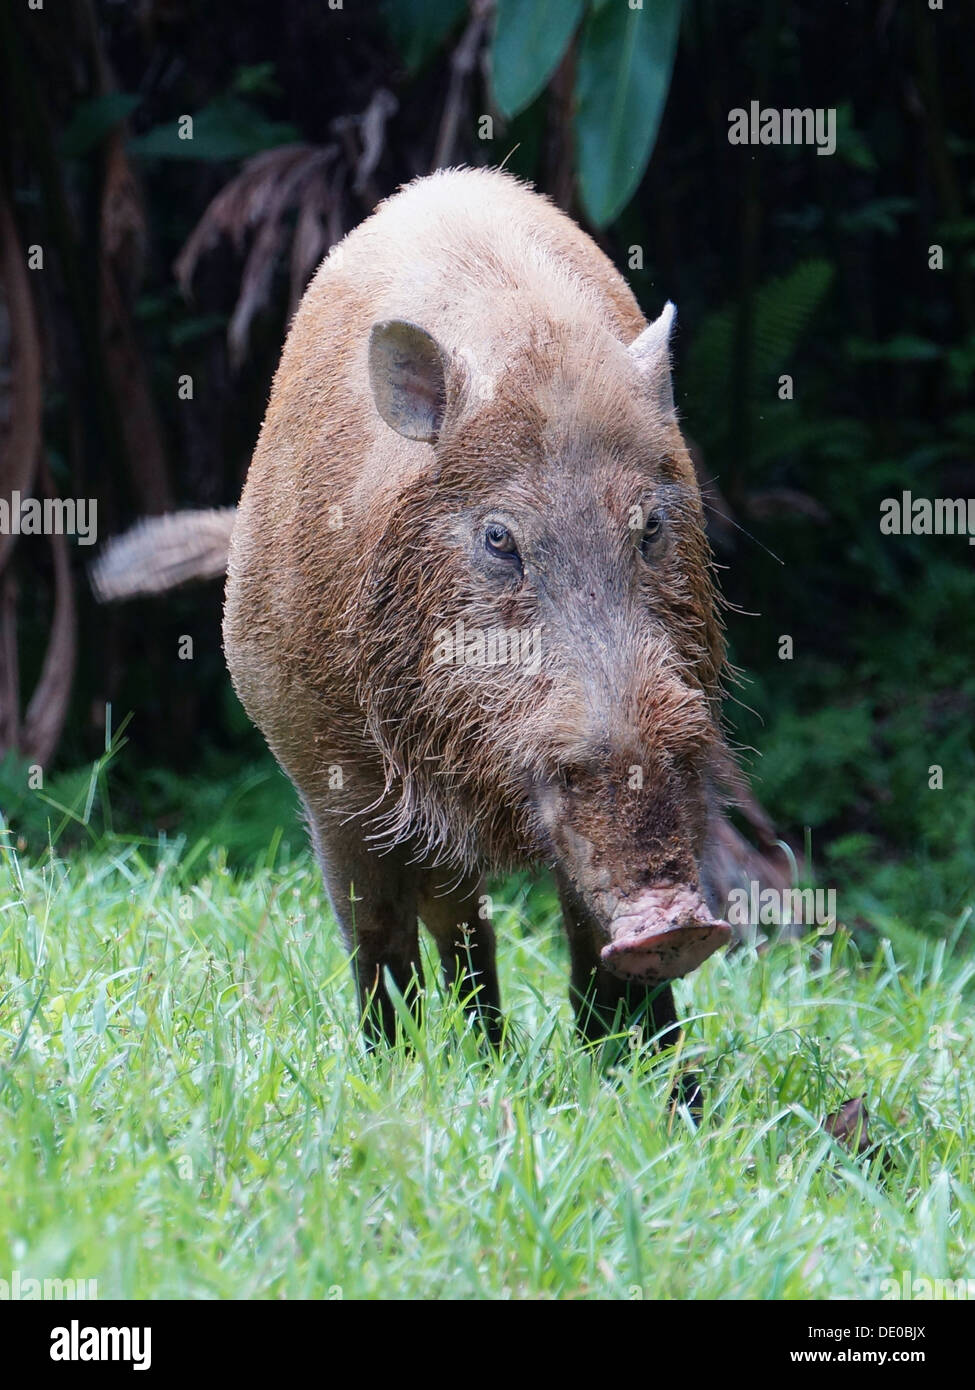 Sus barbatus barbuto pig sumatra borneo Foto Stock